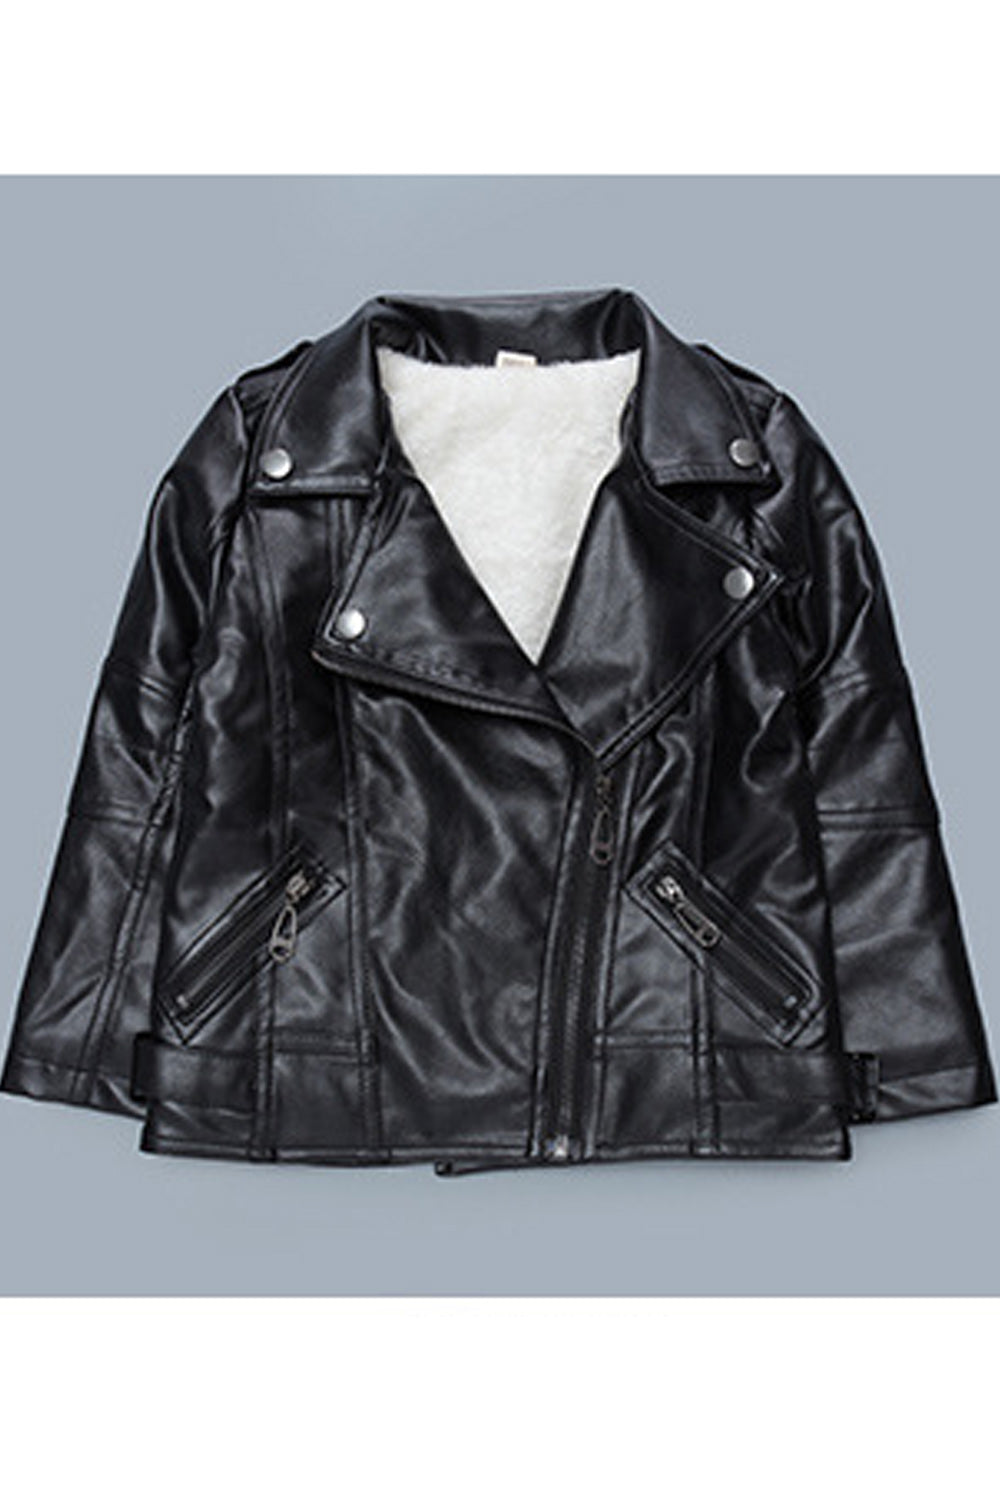 Kids Boys Elegant Solid Pattern Long Sleeve Warm Decent Leather Jacket - KBLJ90278